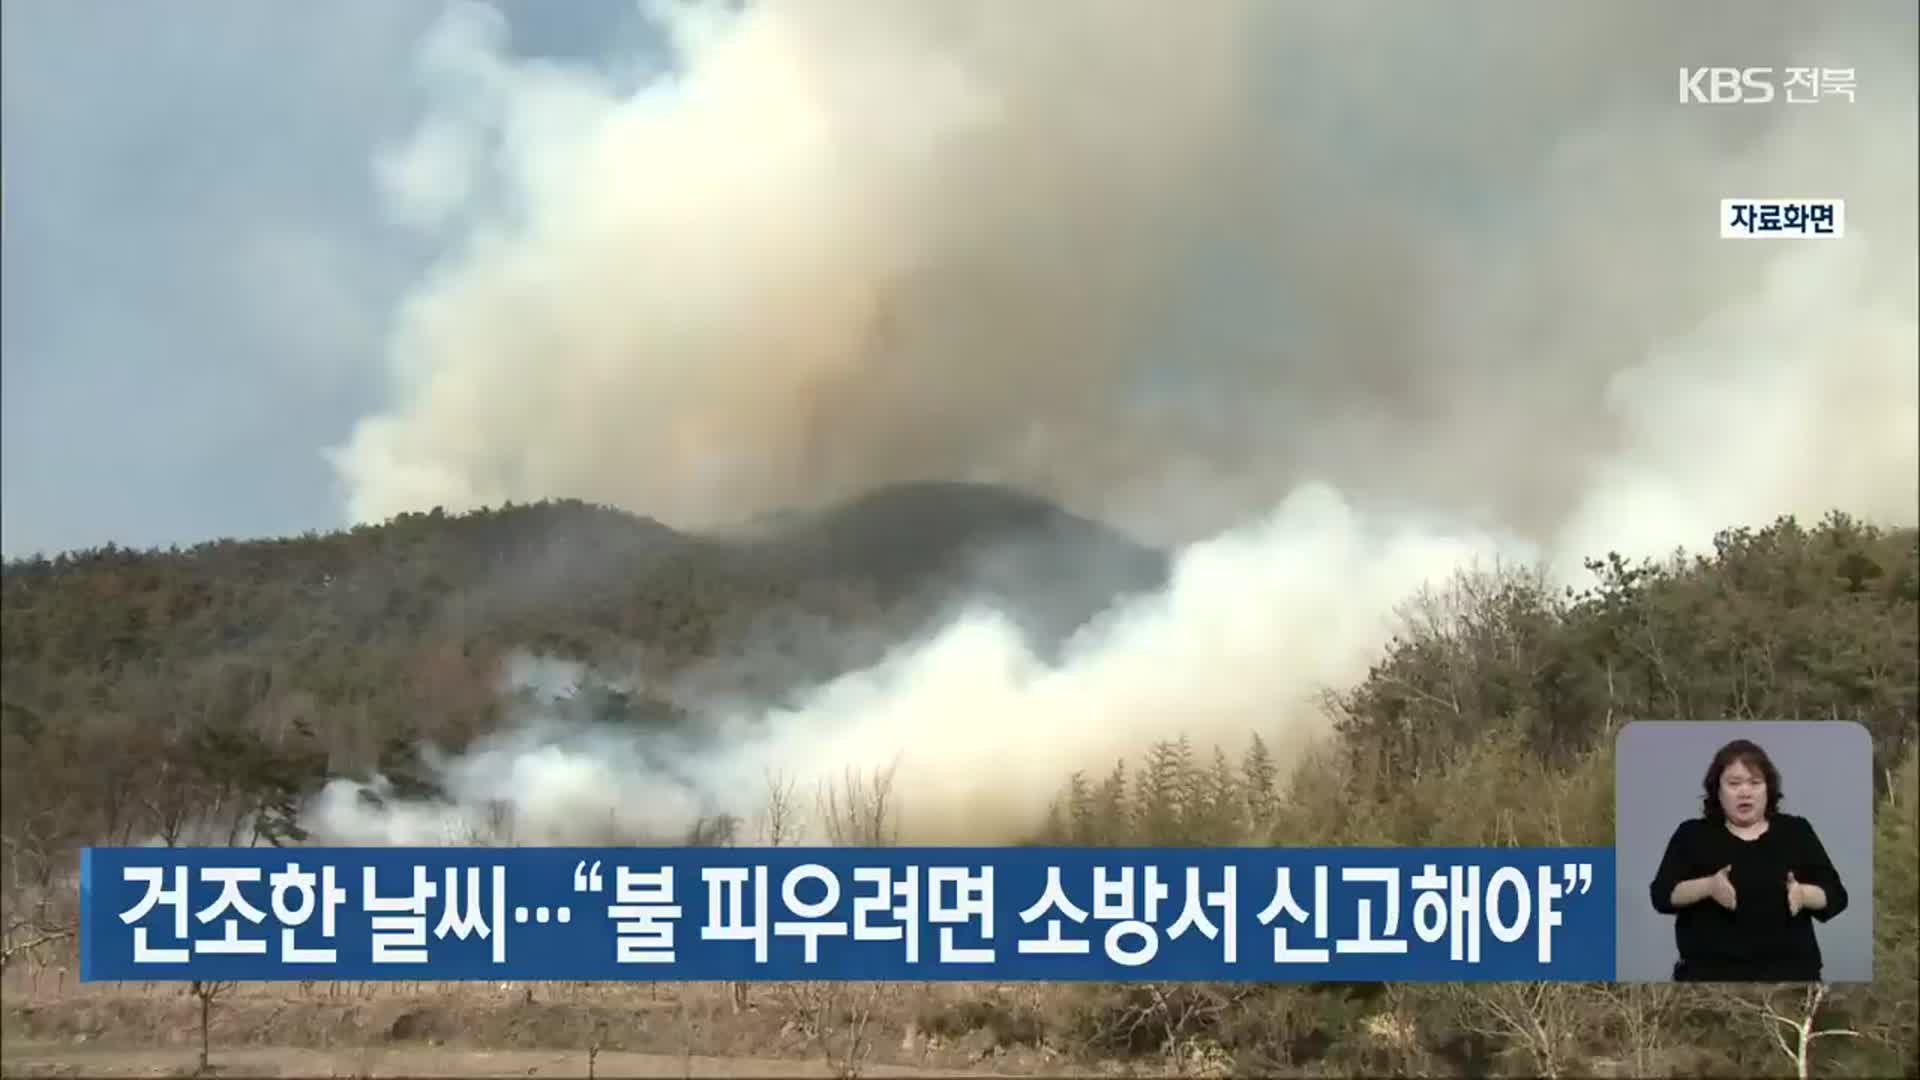 전북, 건조한 날씨…“불 피우려면 소방서 신고해야”